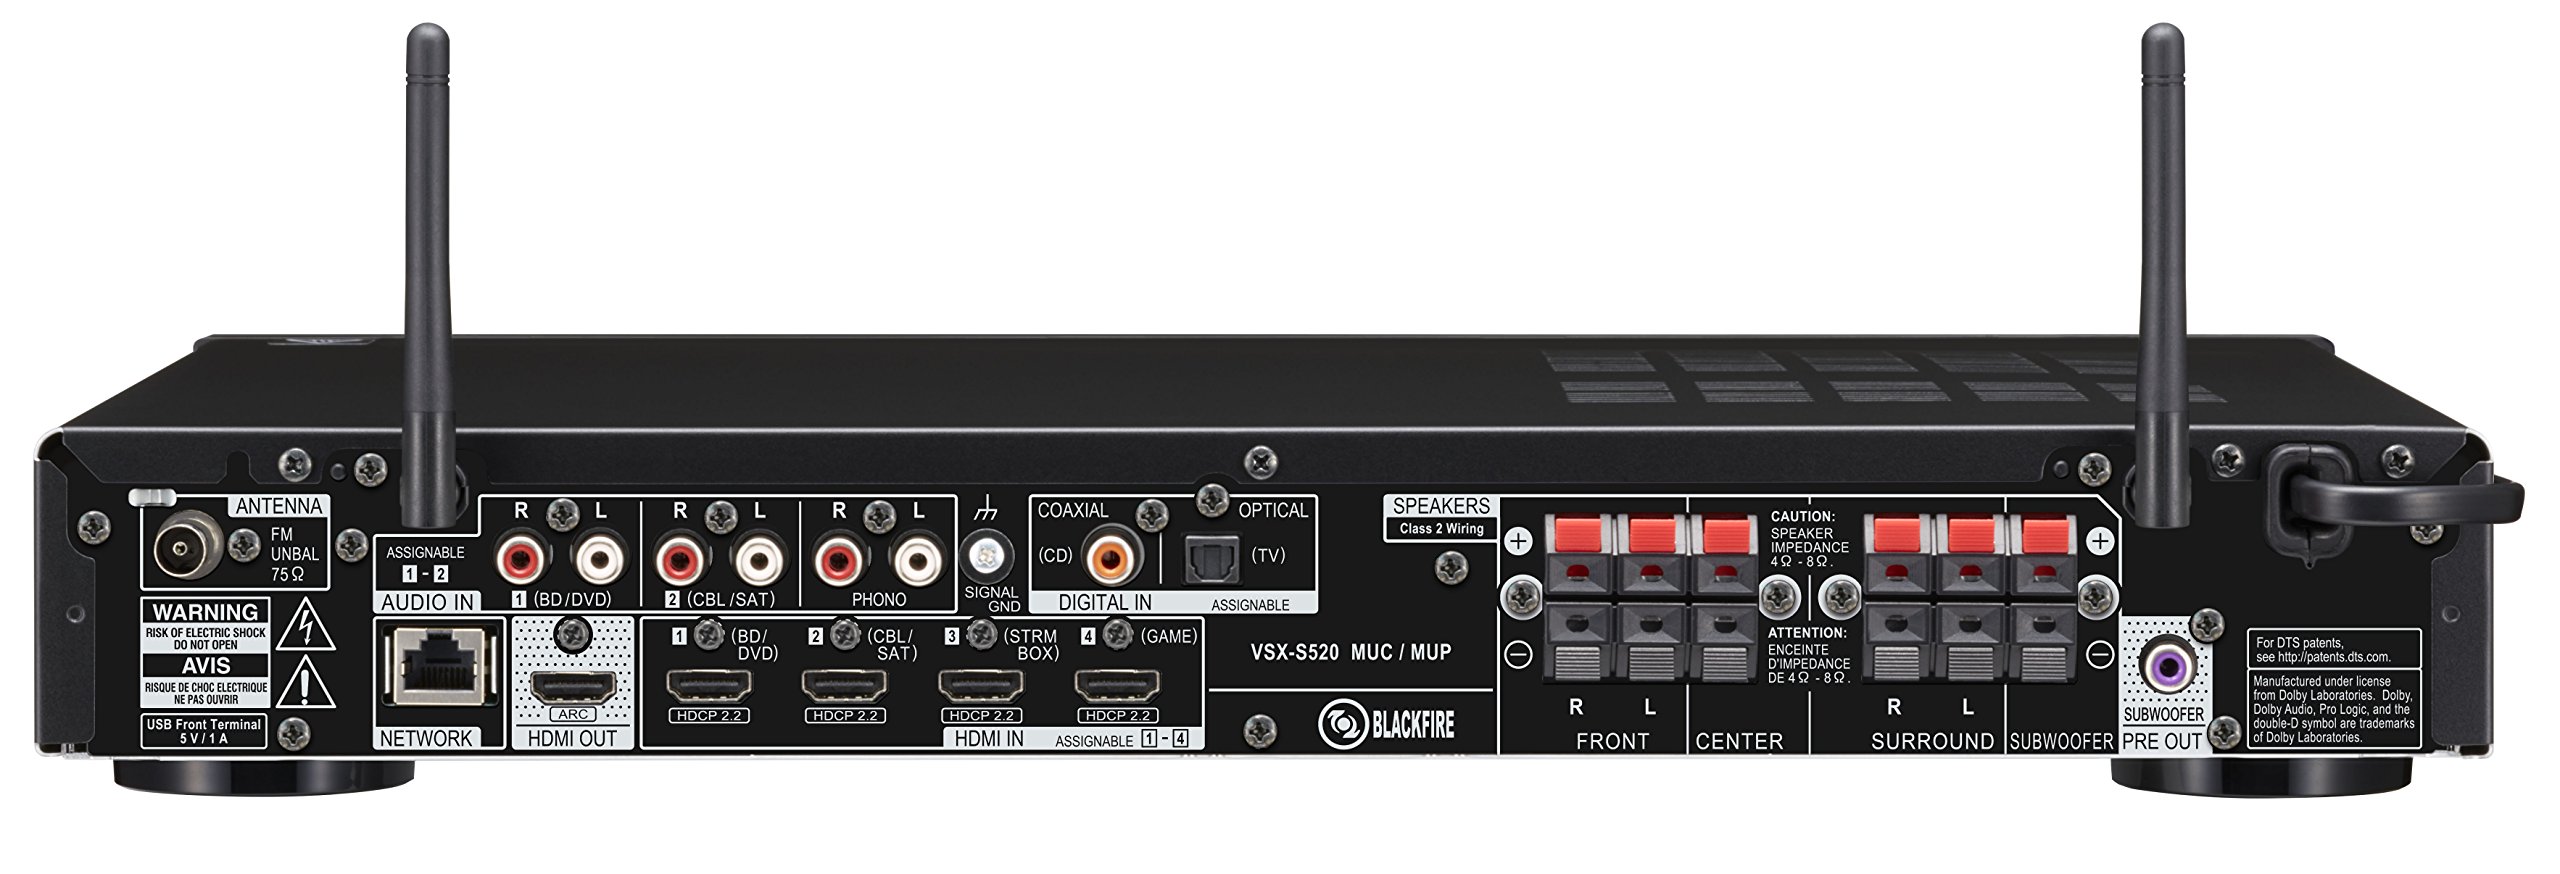 Pioneer Vsx S5 Slimline Av Receiver Review Stereonet United Kingdom